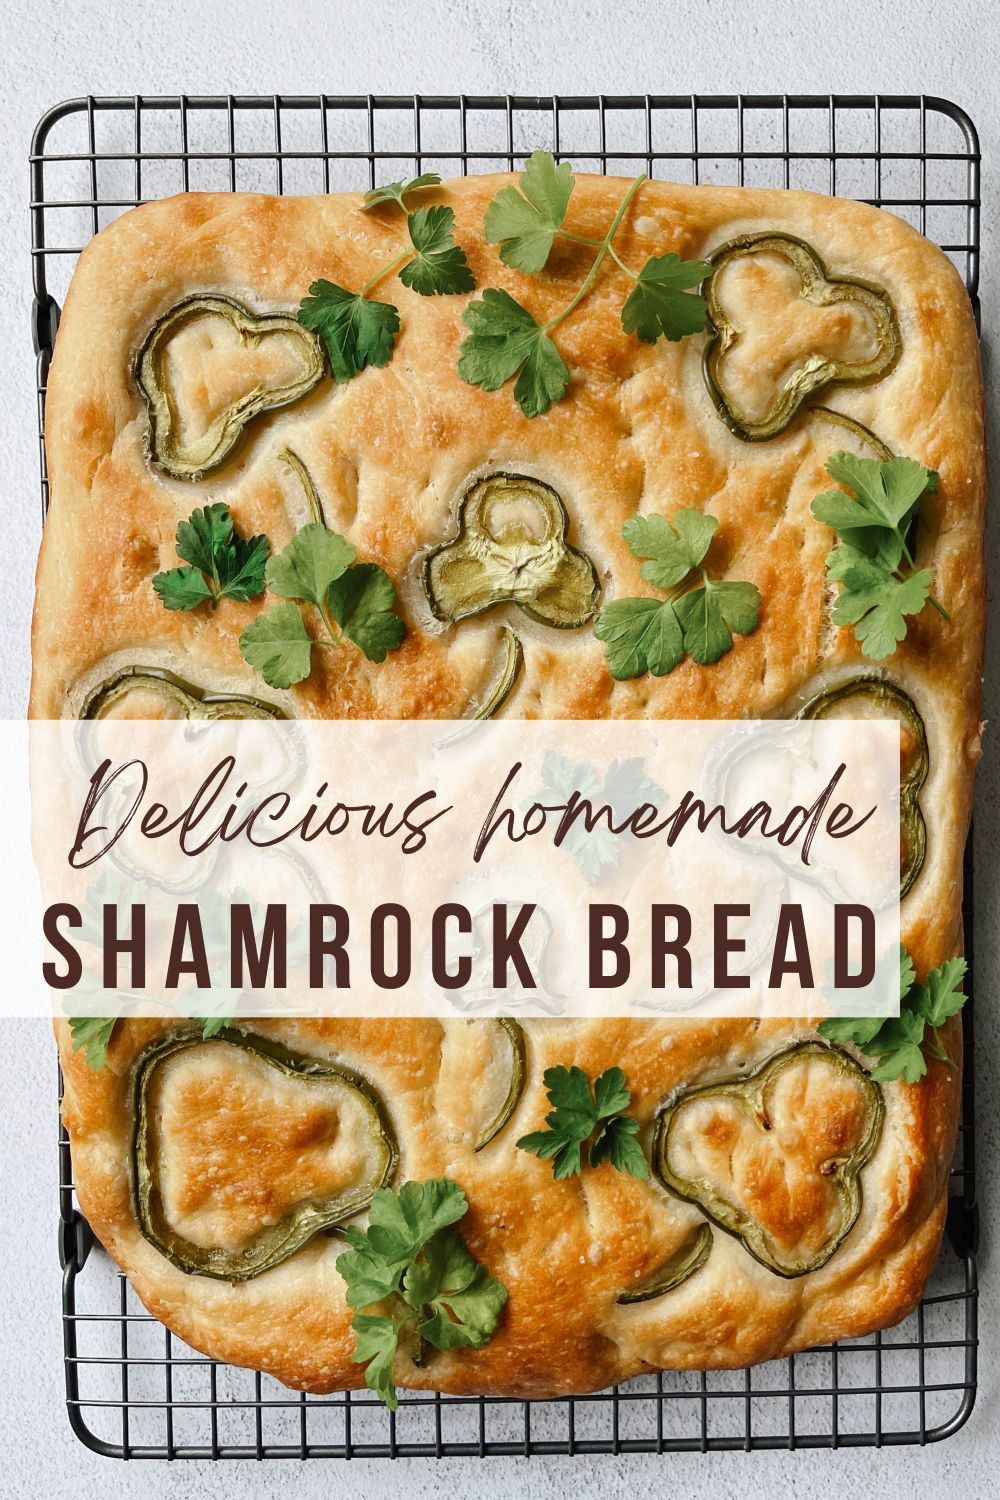 Shamrock Bread